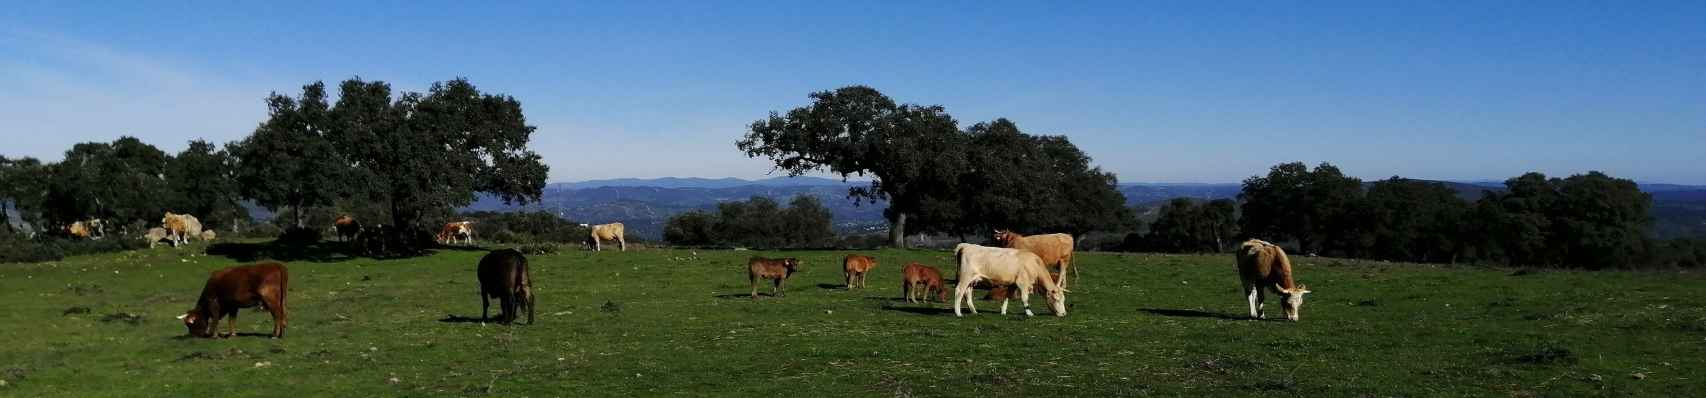 Vacas en una finca de ganadería extensiva en dehesa, en El Castillo de las Guardas (Sevilla).